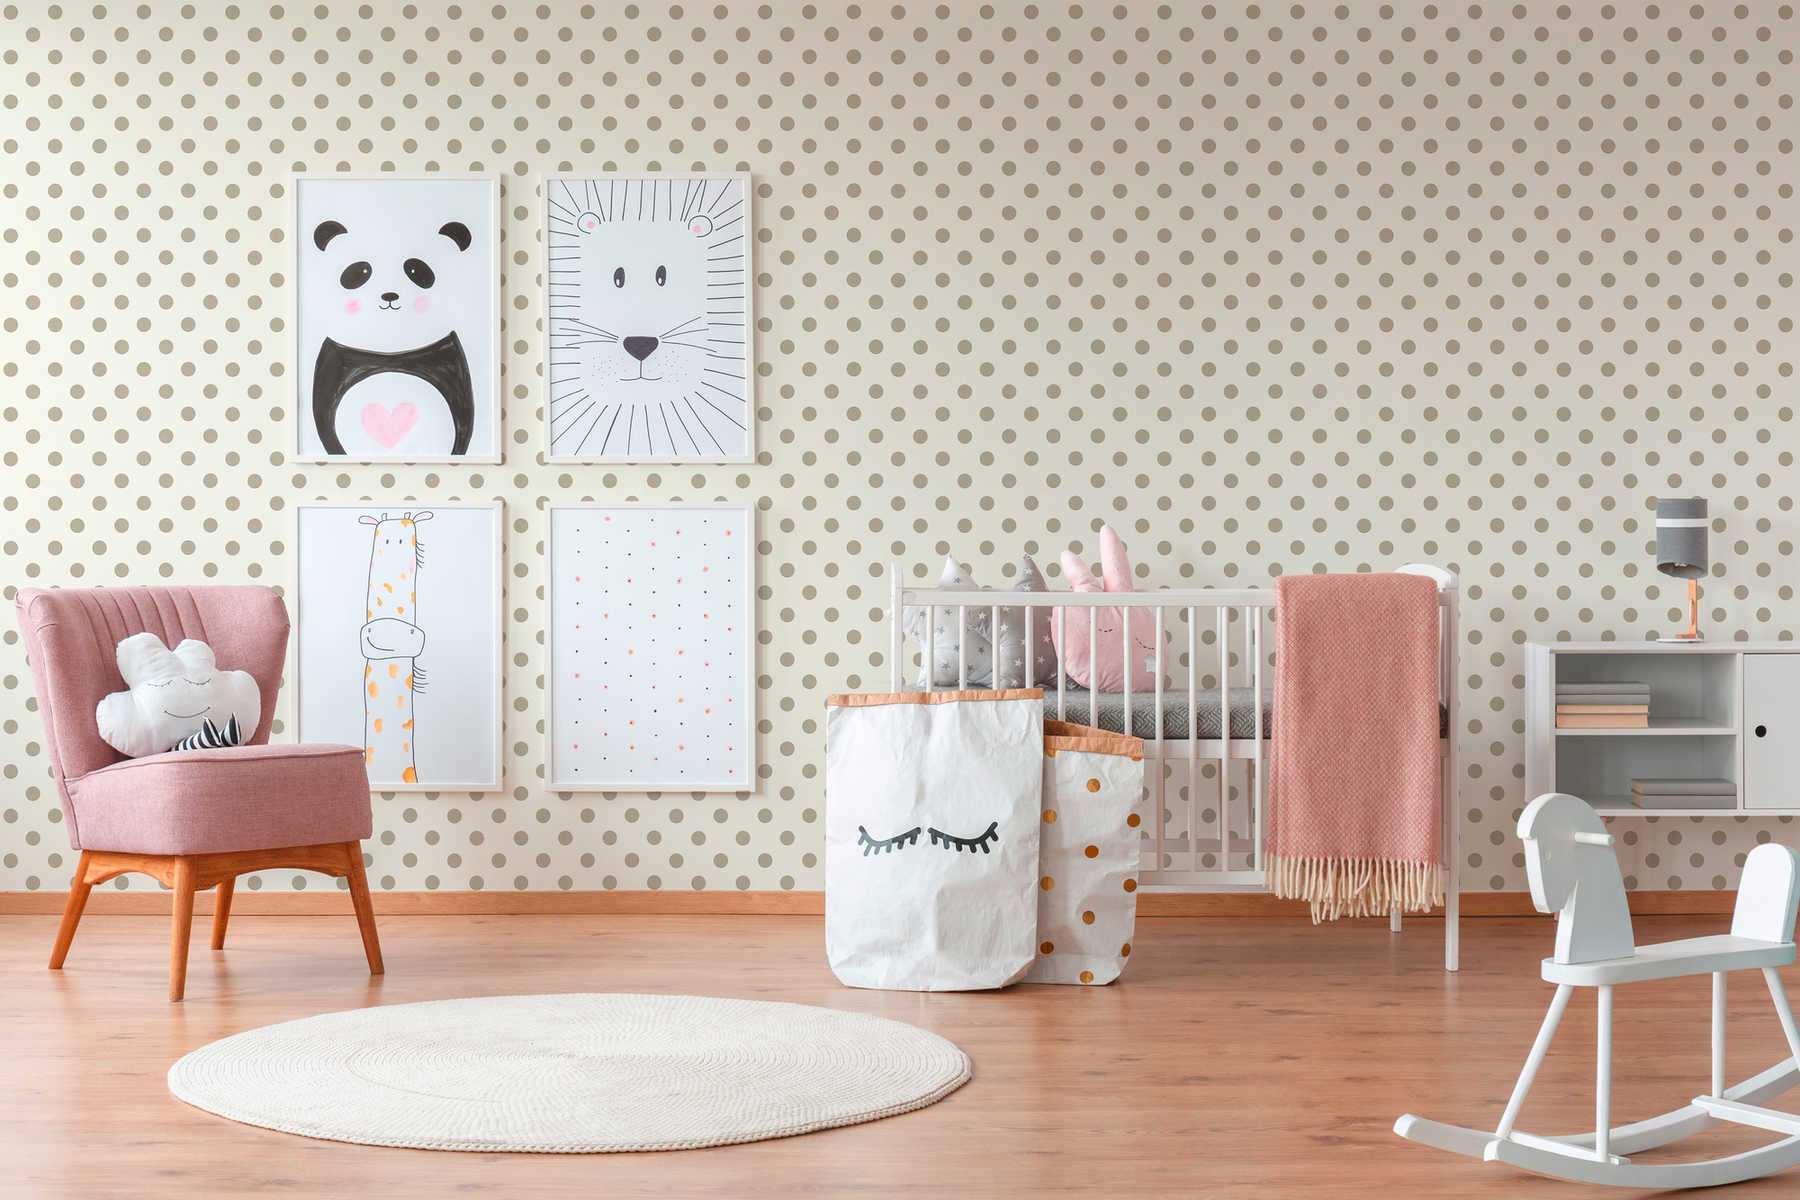             Papier peint intissé points, Polka Dots Design pour chambre d'enfant - beige, rose
        